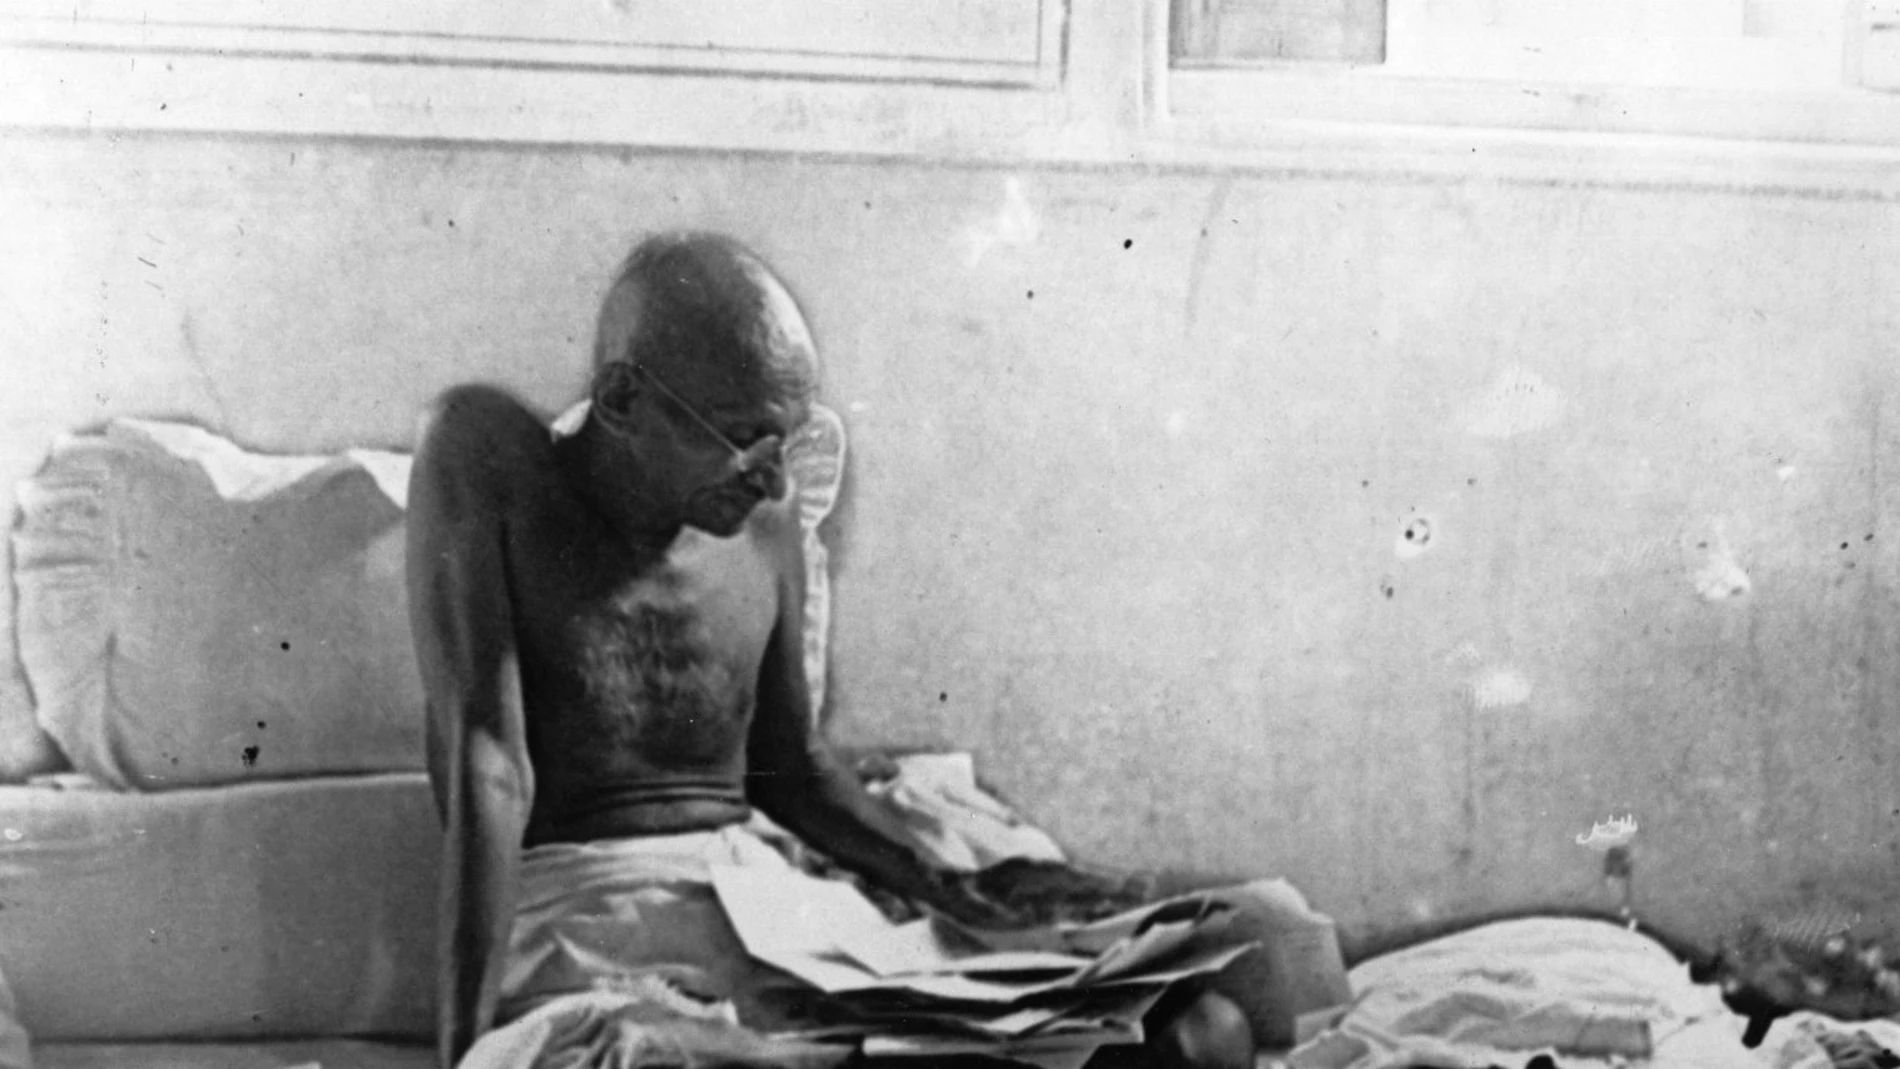 El Día de la no violencia conmemora el nacimiento de Mahatma Gandhi